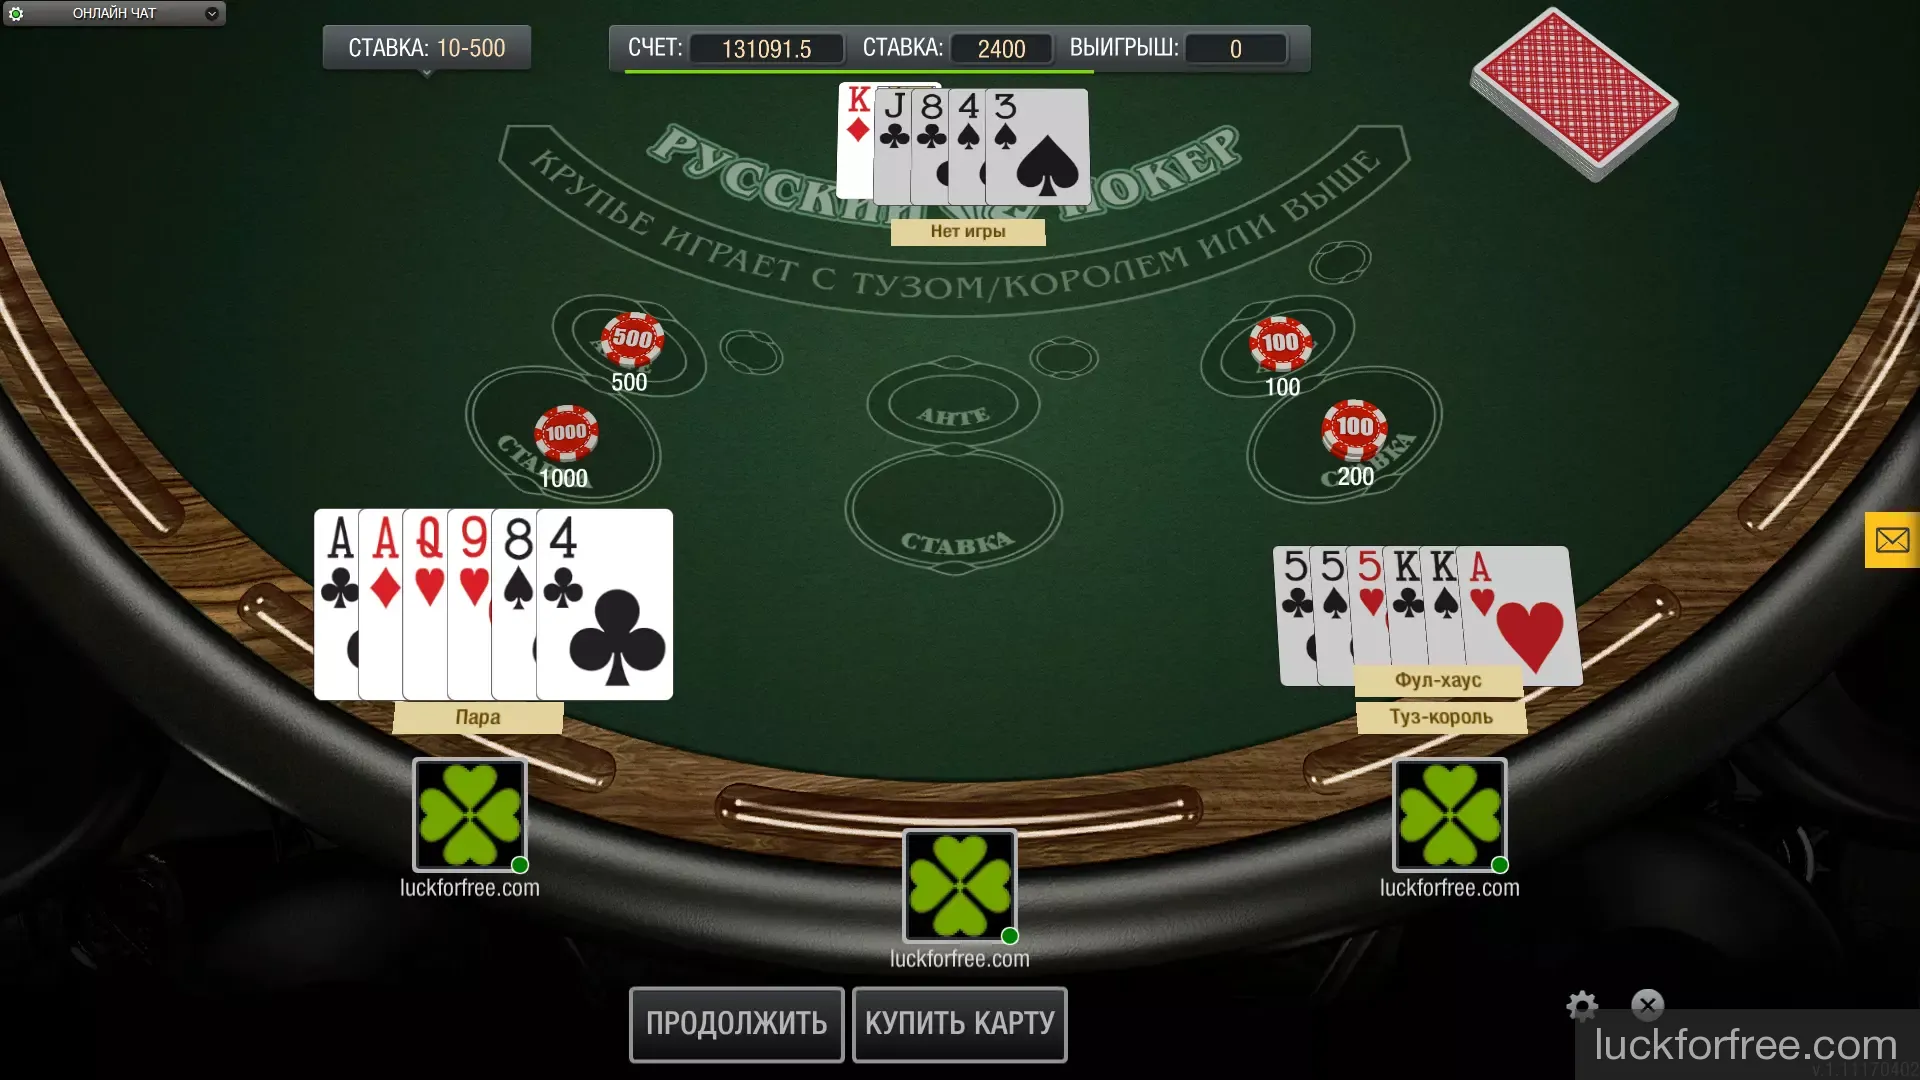 Играть русский покер казино покер онлайн с другом по сети в